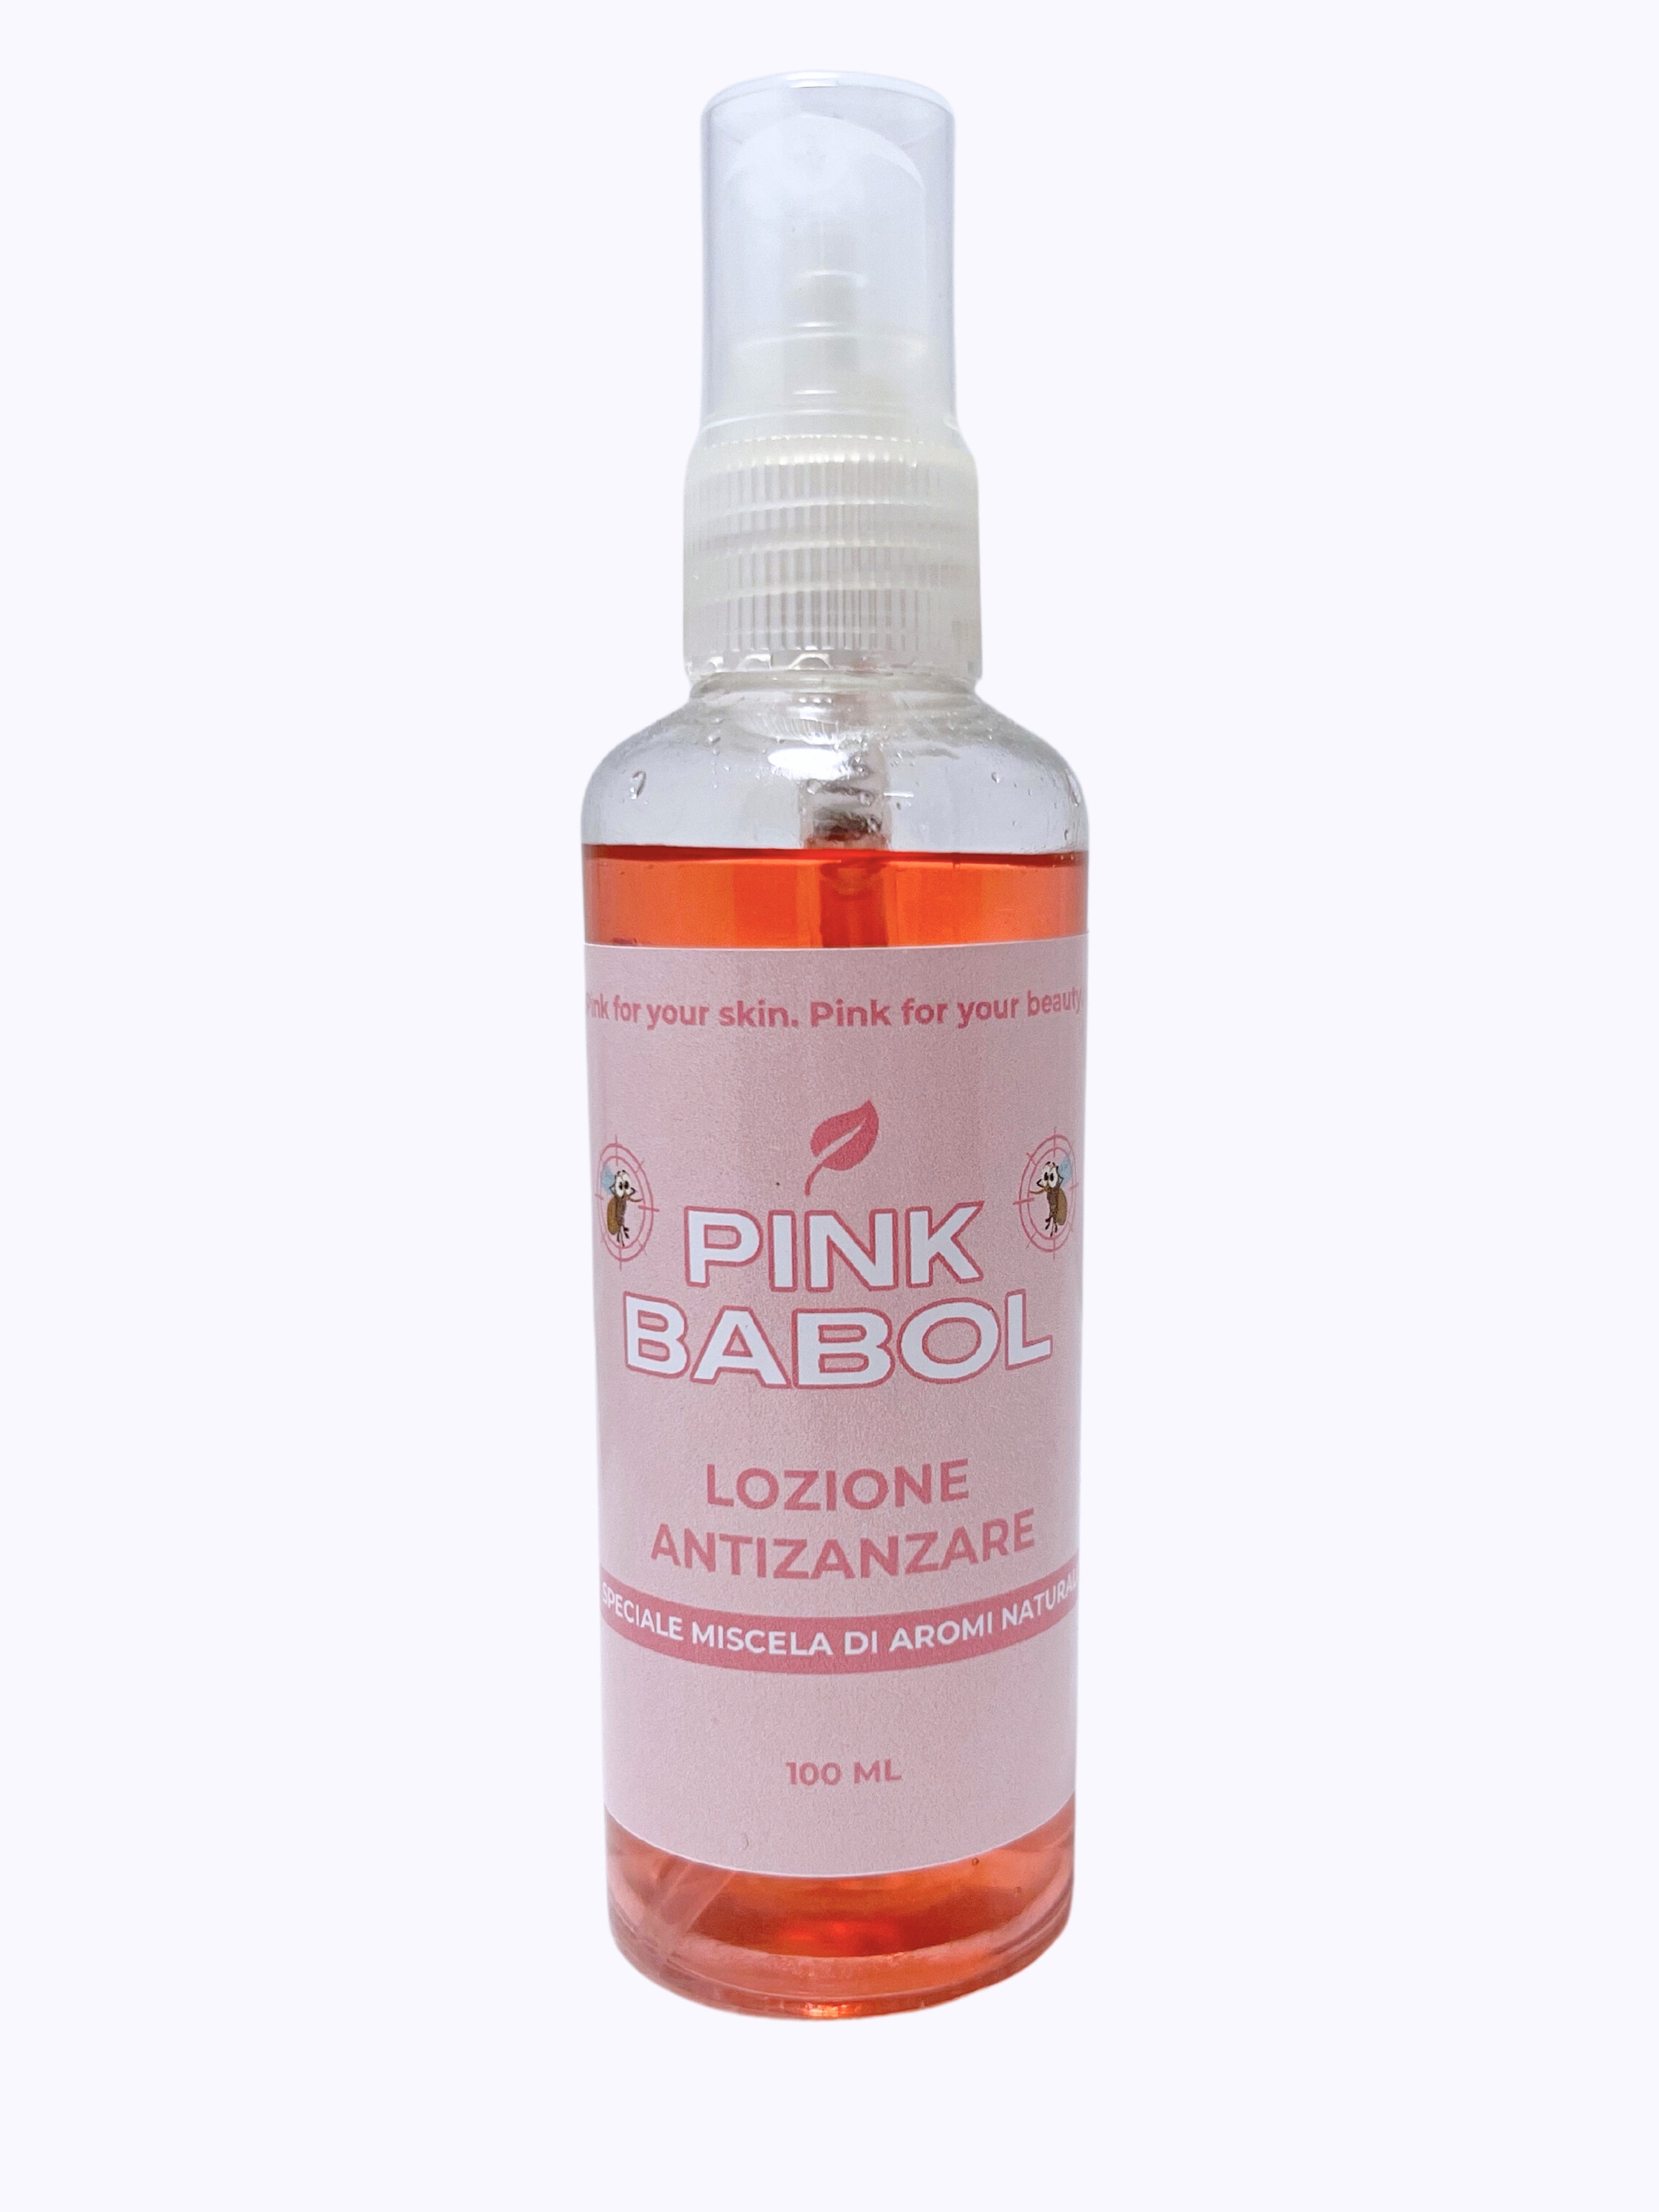 Lozione anti zanzare - Speciale miscela di aromi naturali-Pink Babol